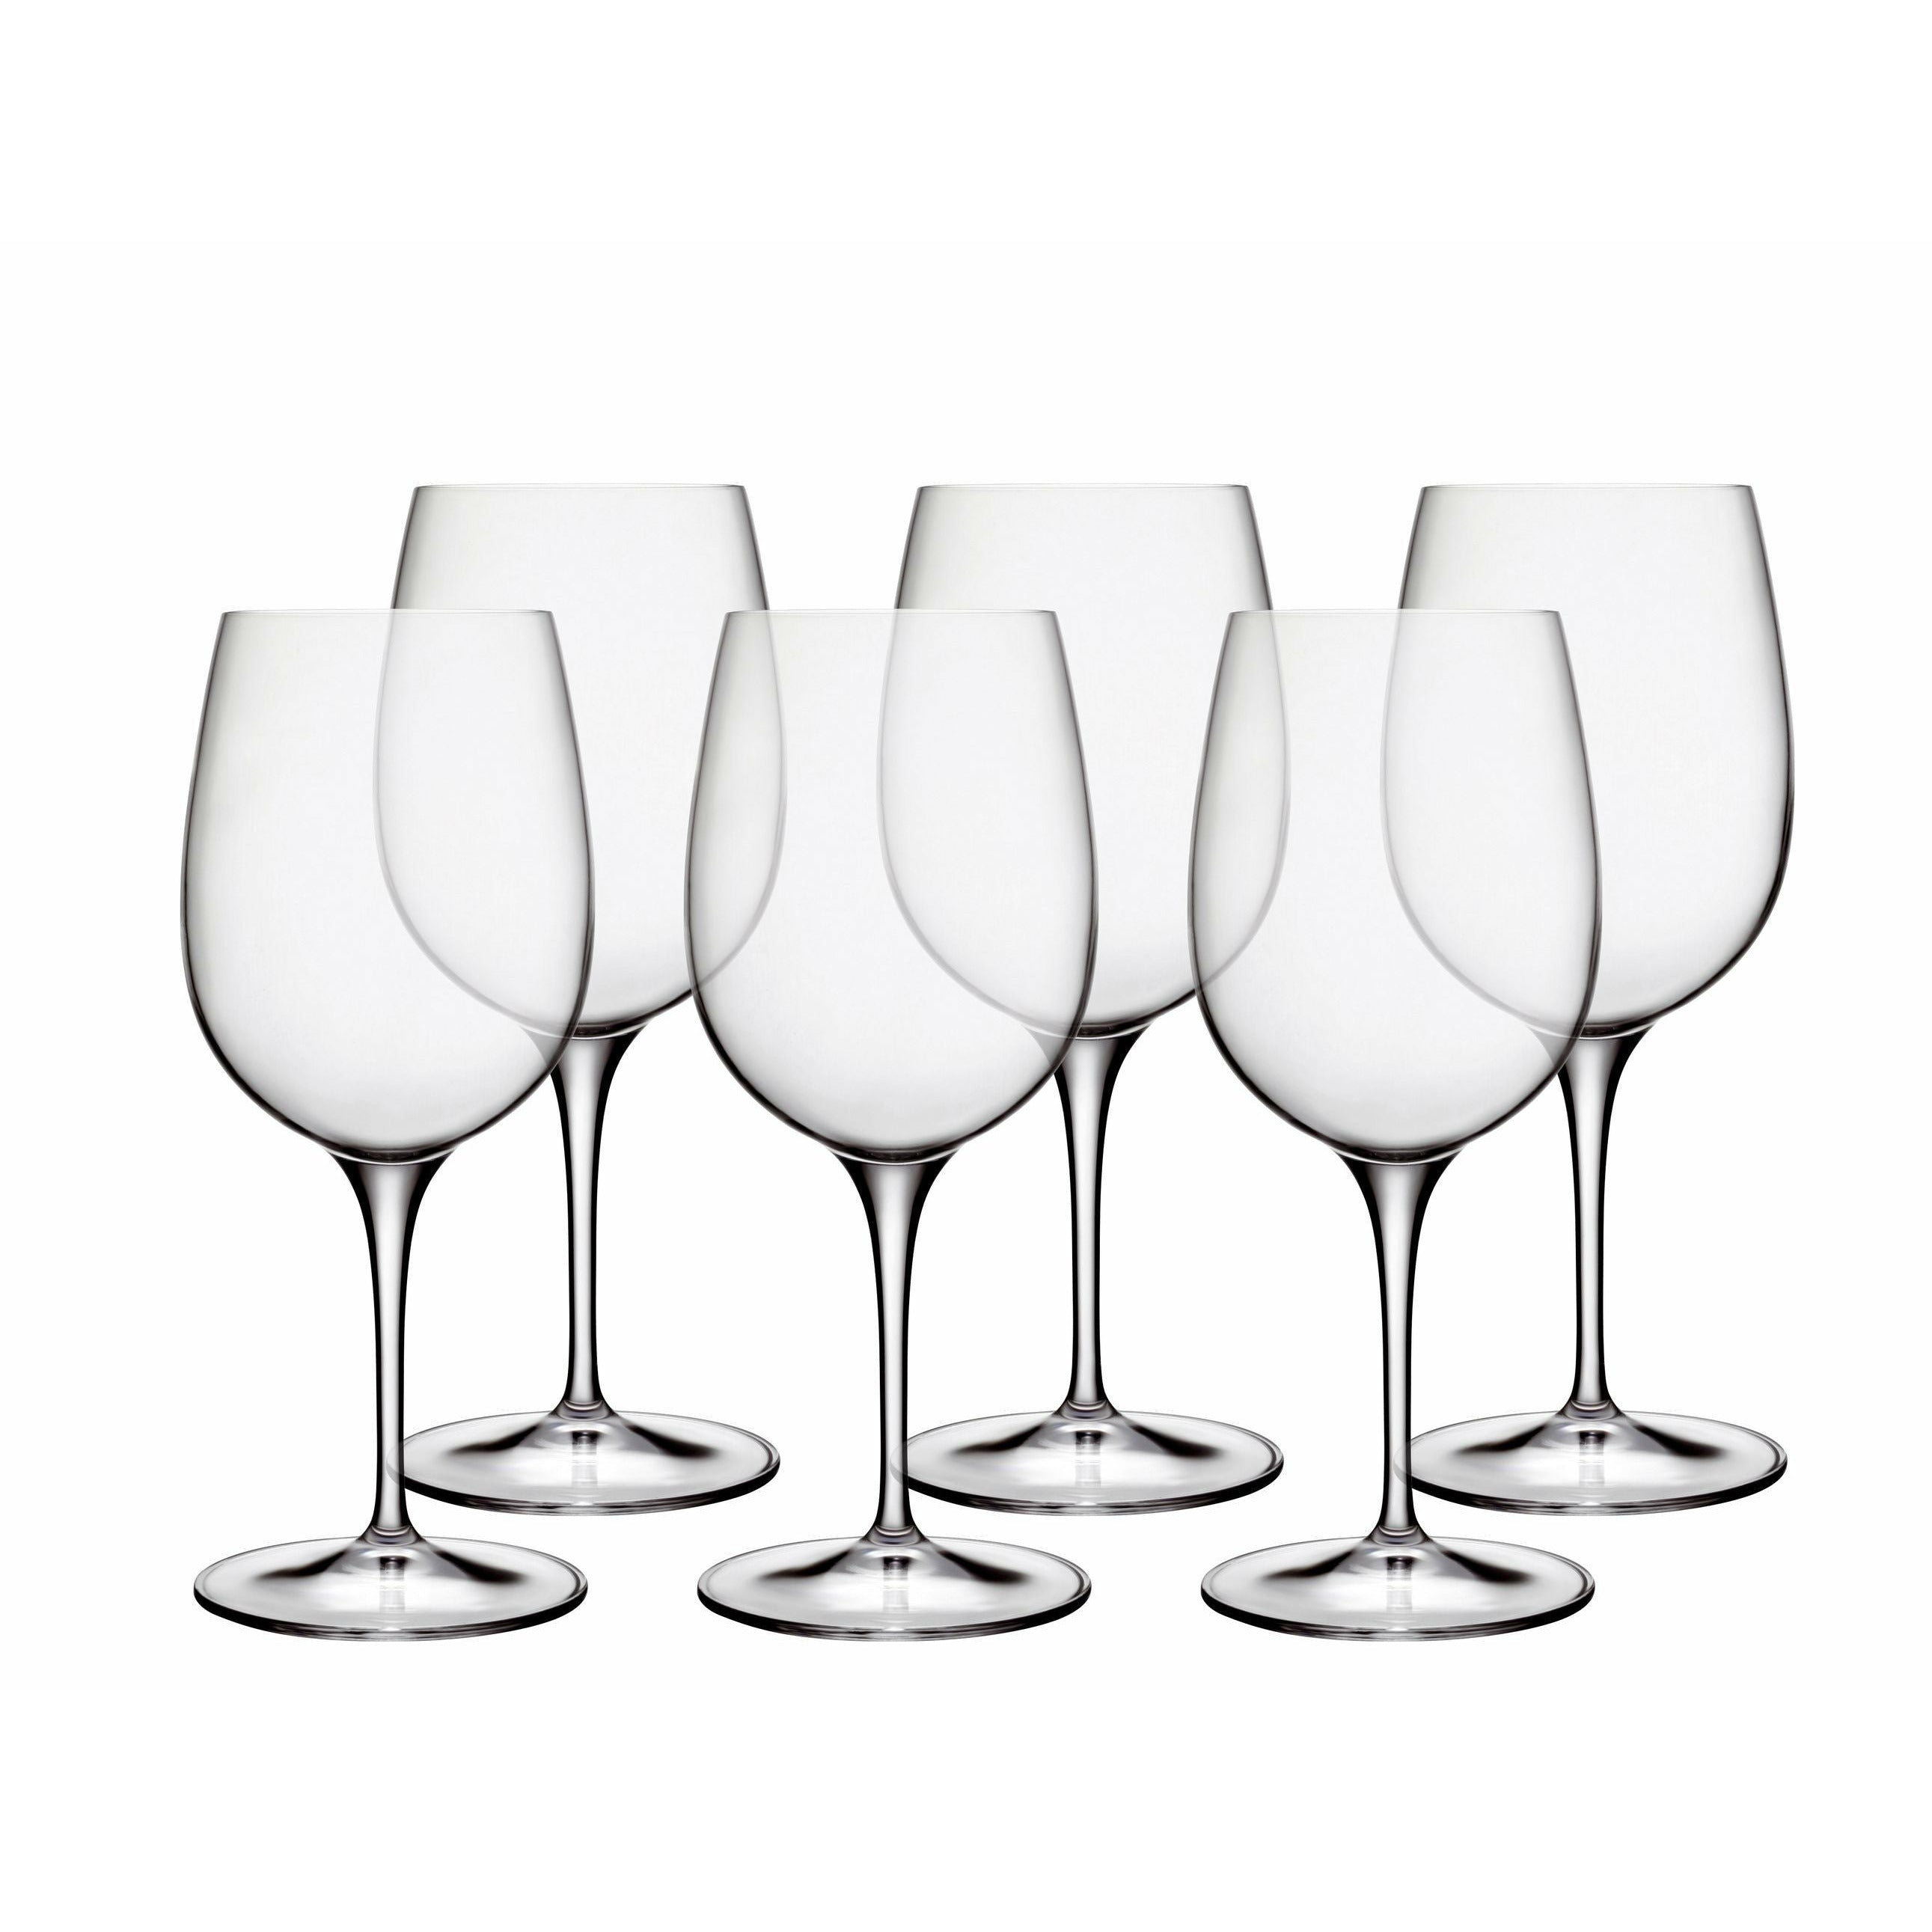 Luigi Bormioli Palace White Wine Glass, Set Of 6